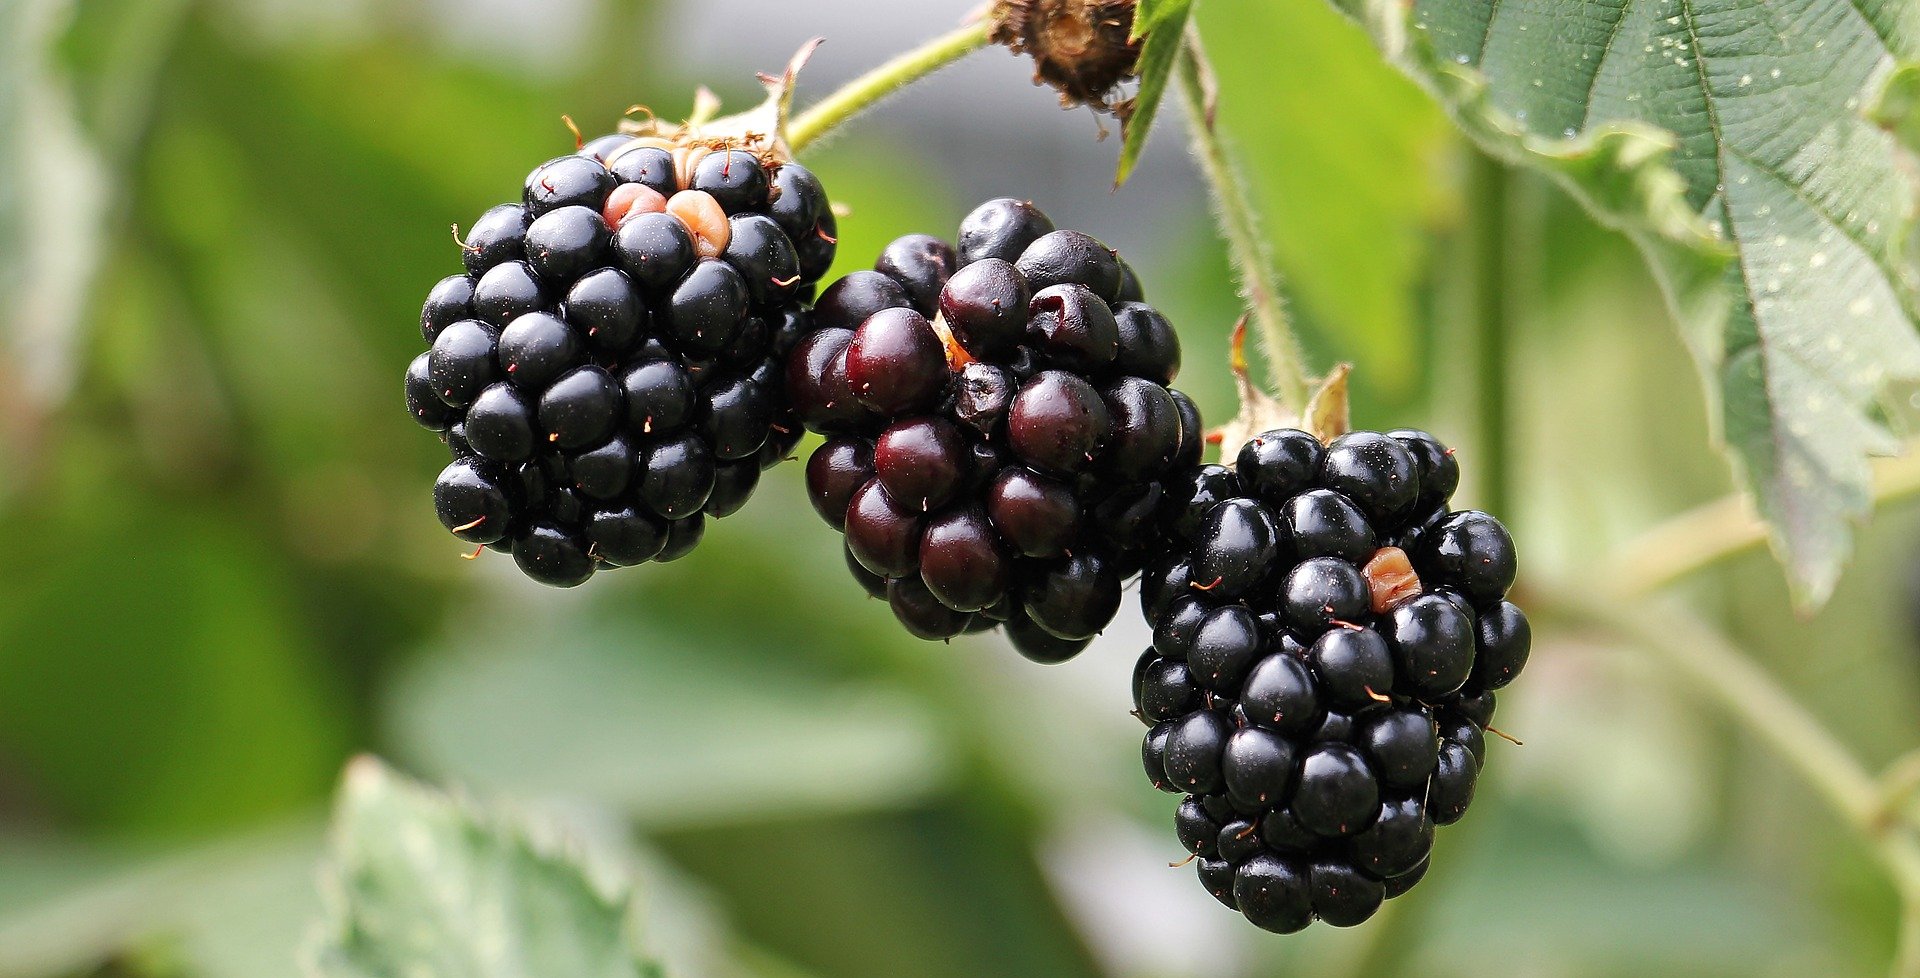 Blackberries on bush.